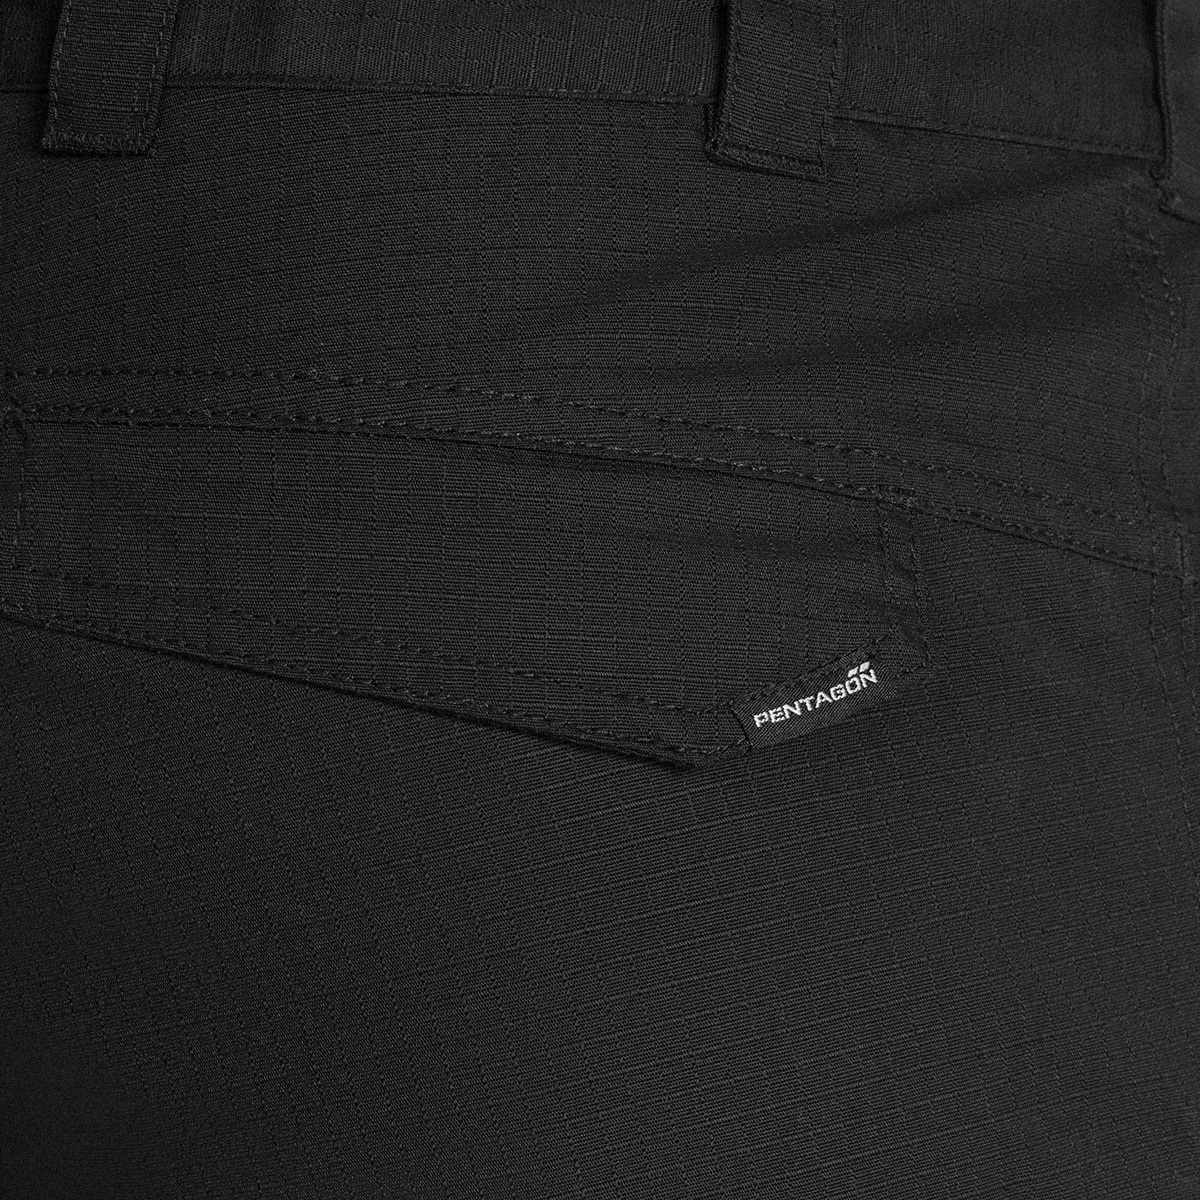 Spodnie Pentagon Lycos Black